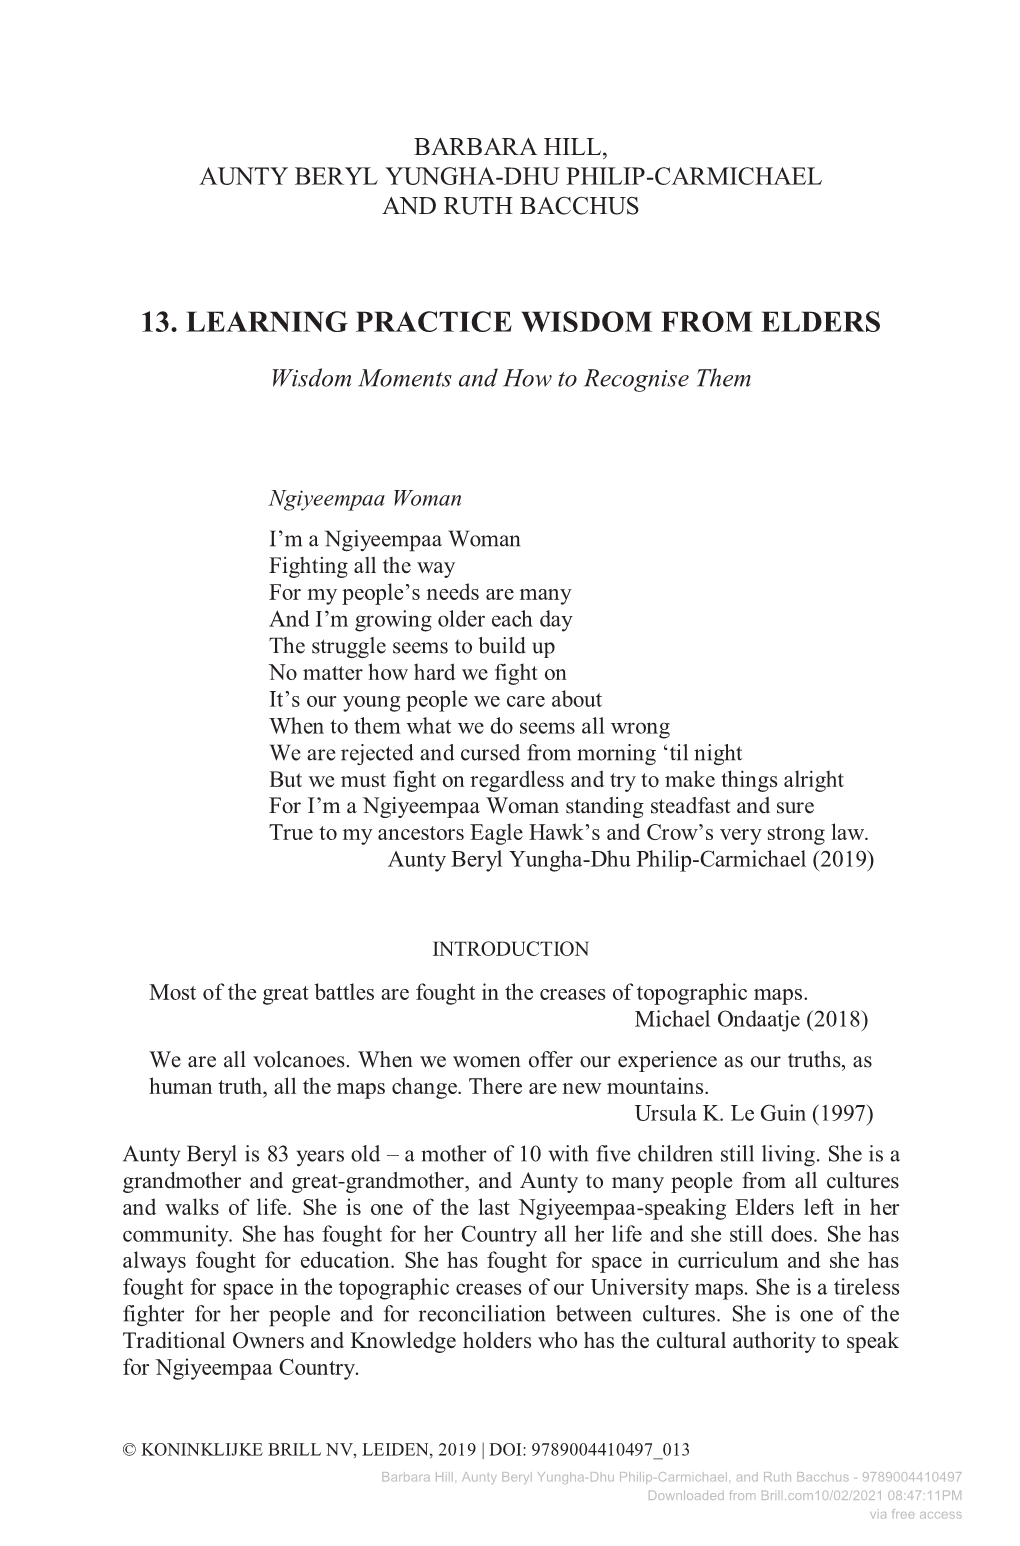 13. Learning Practice Wisdom from Elders